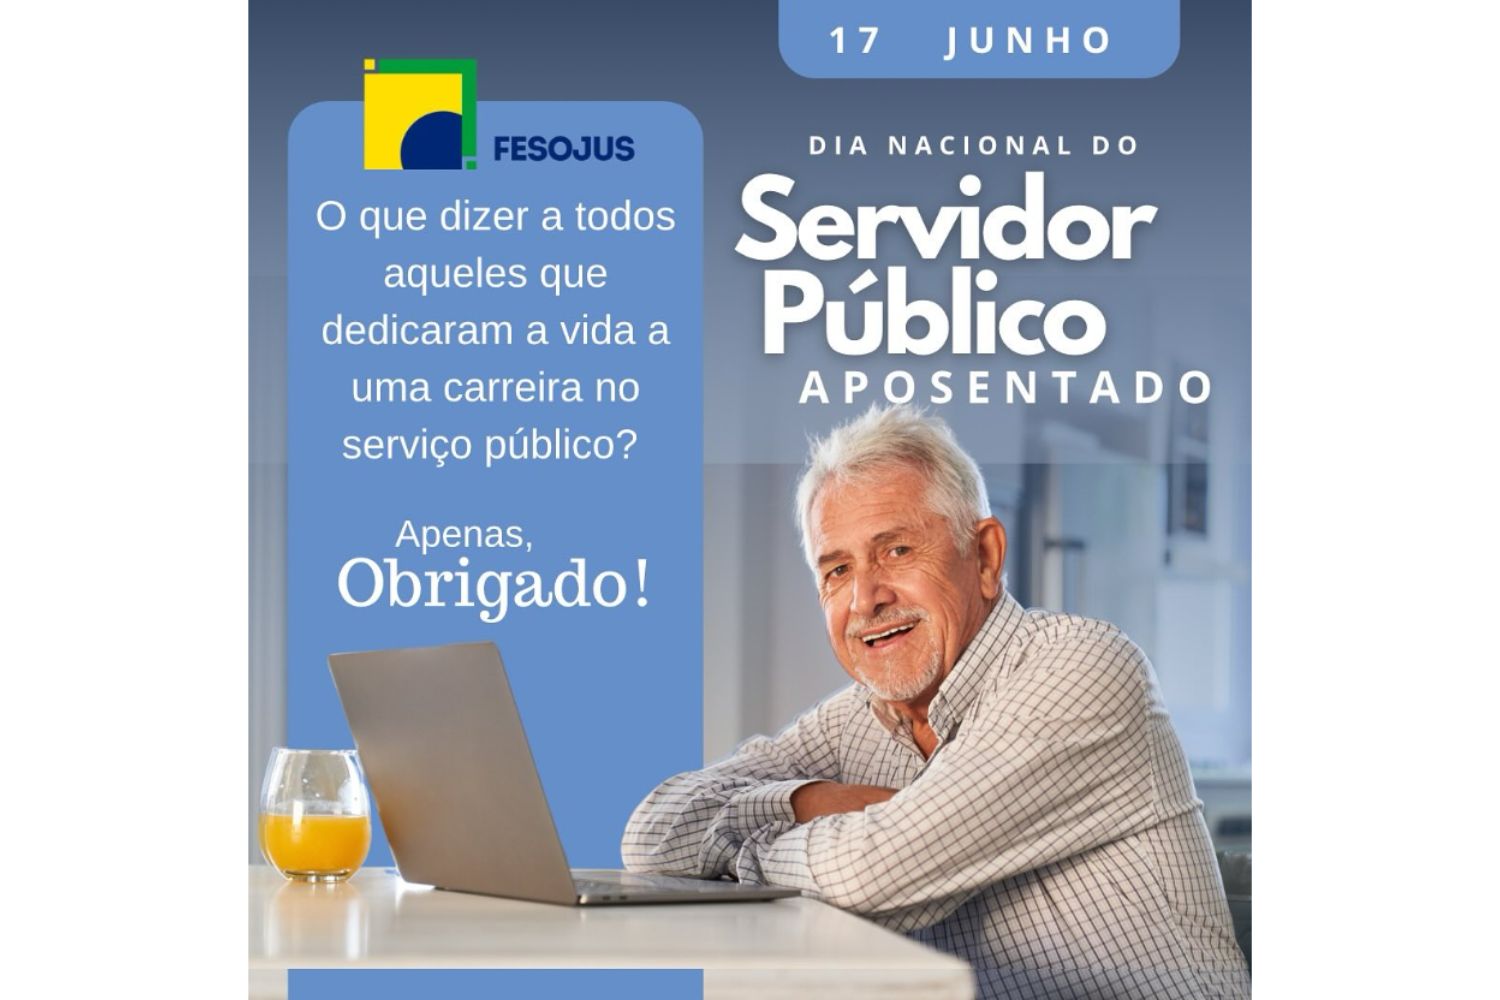 Dia Nacional do Servidor Público Aposentado